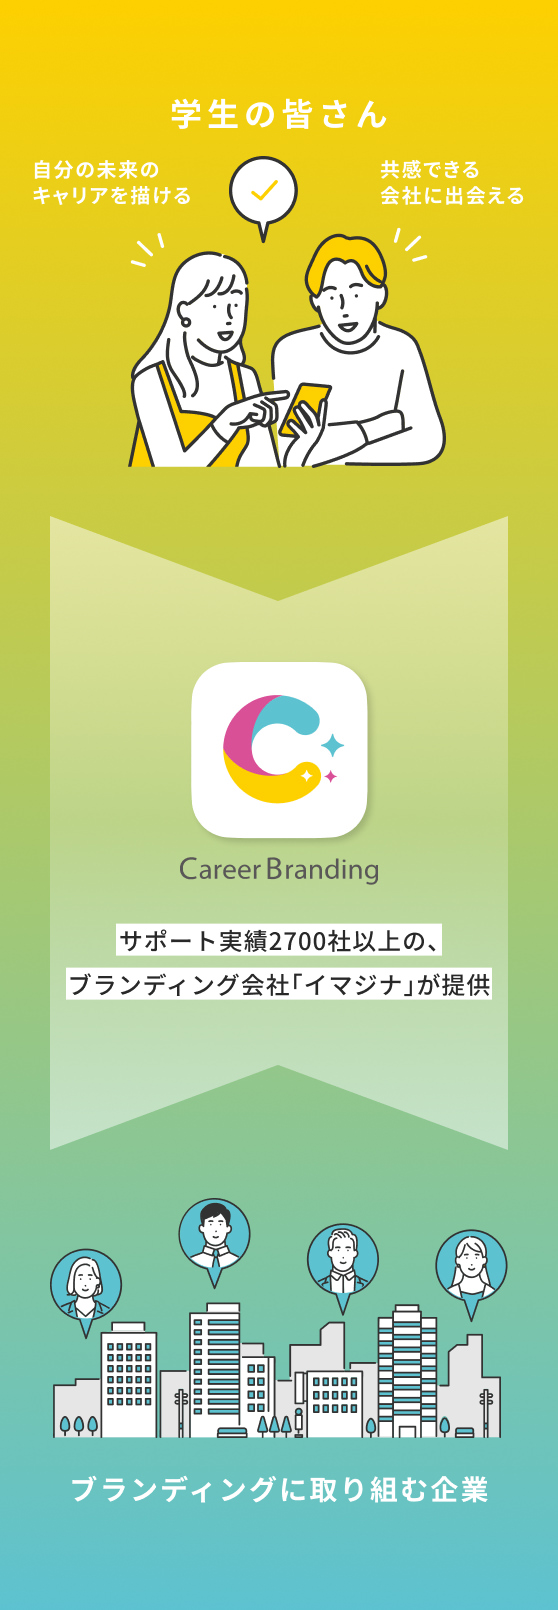 career branding